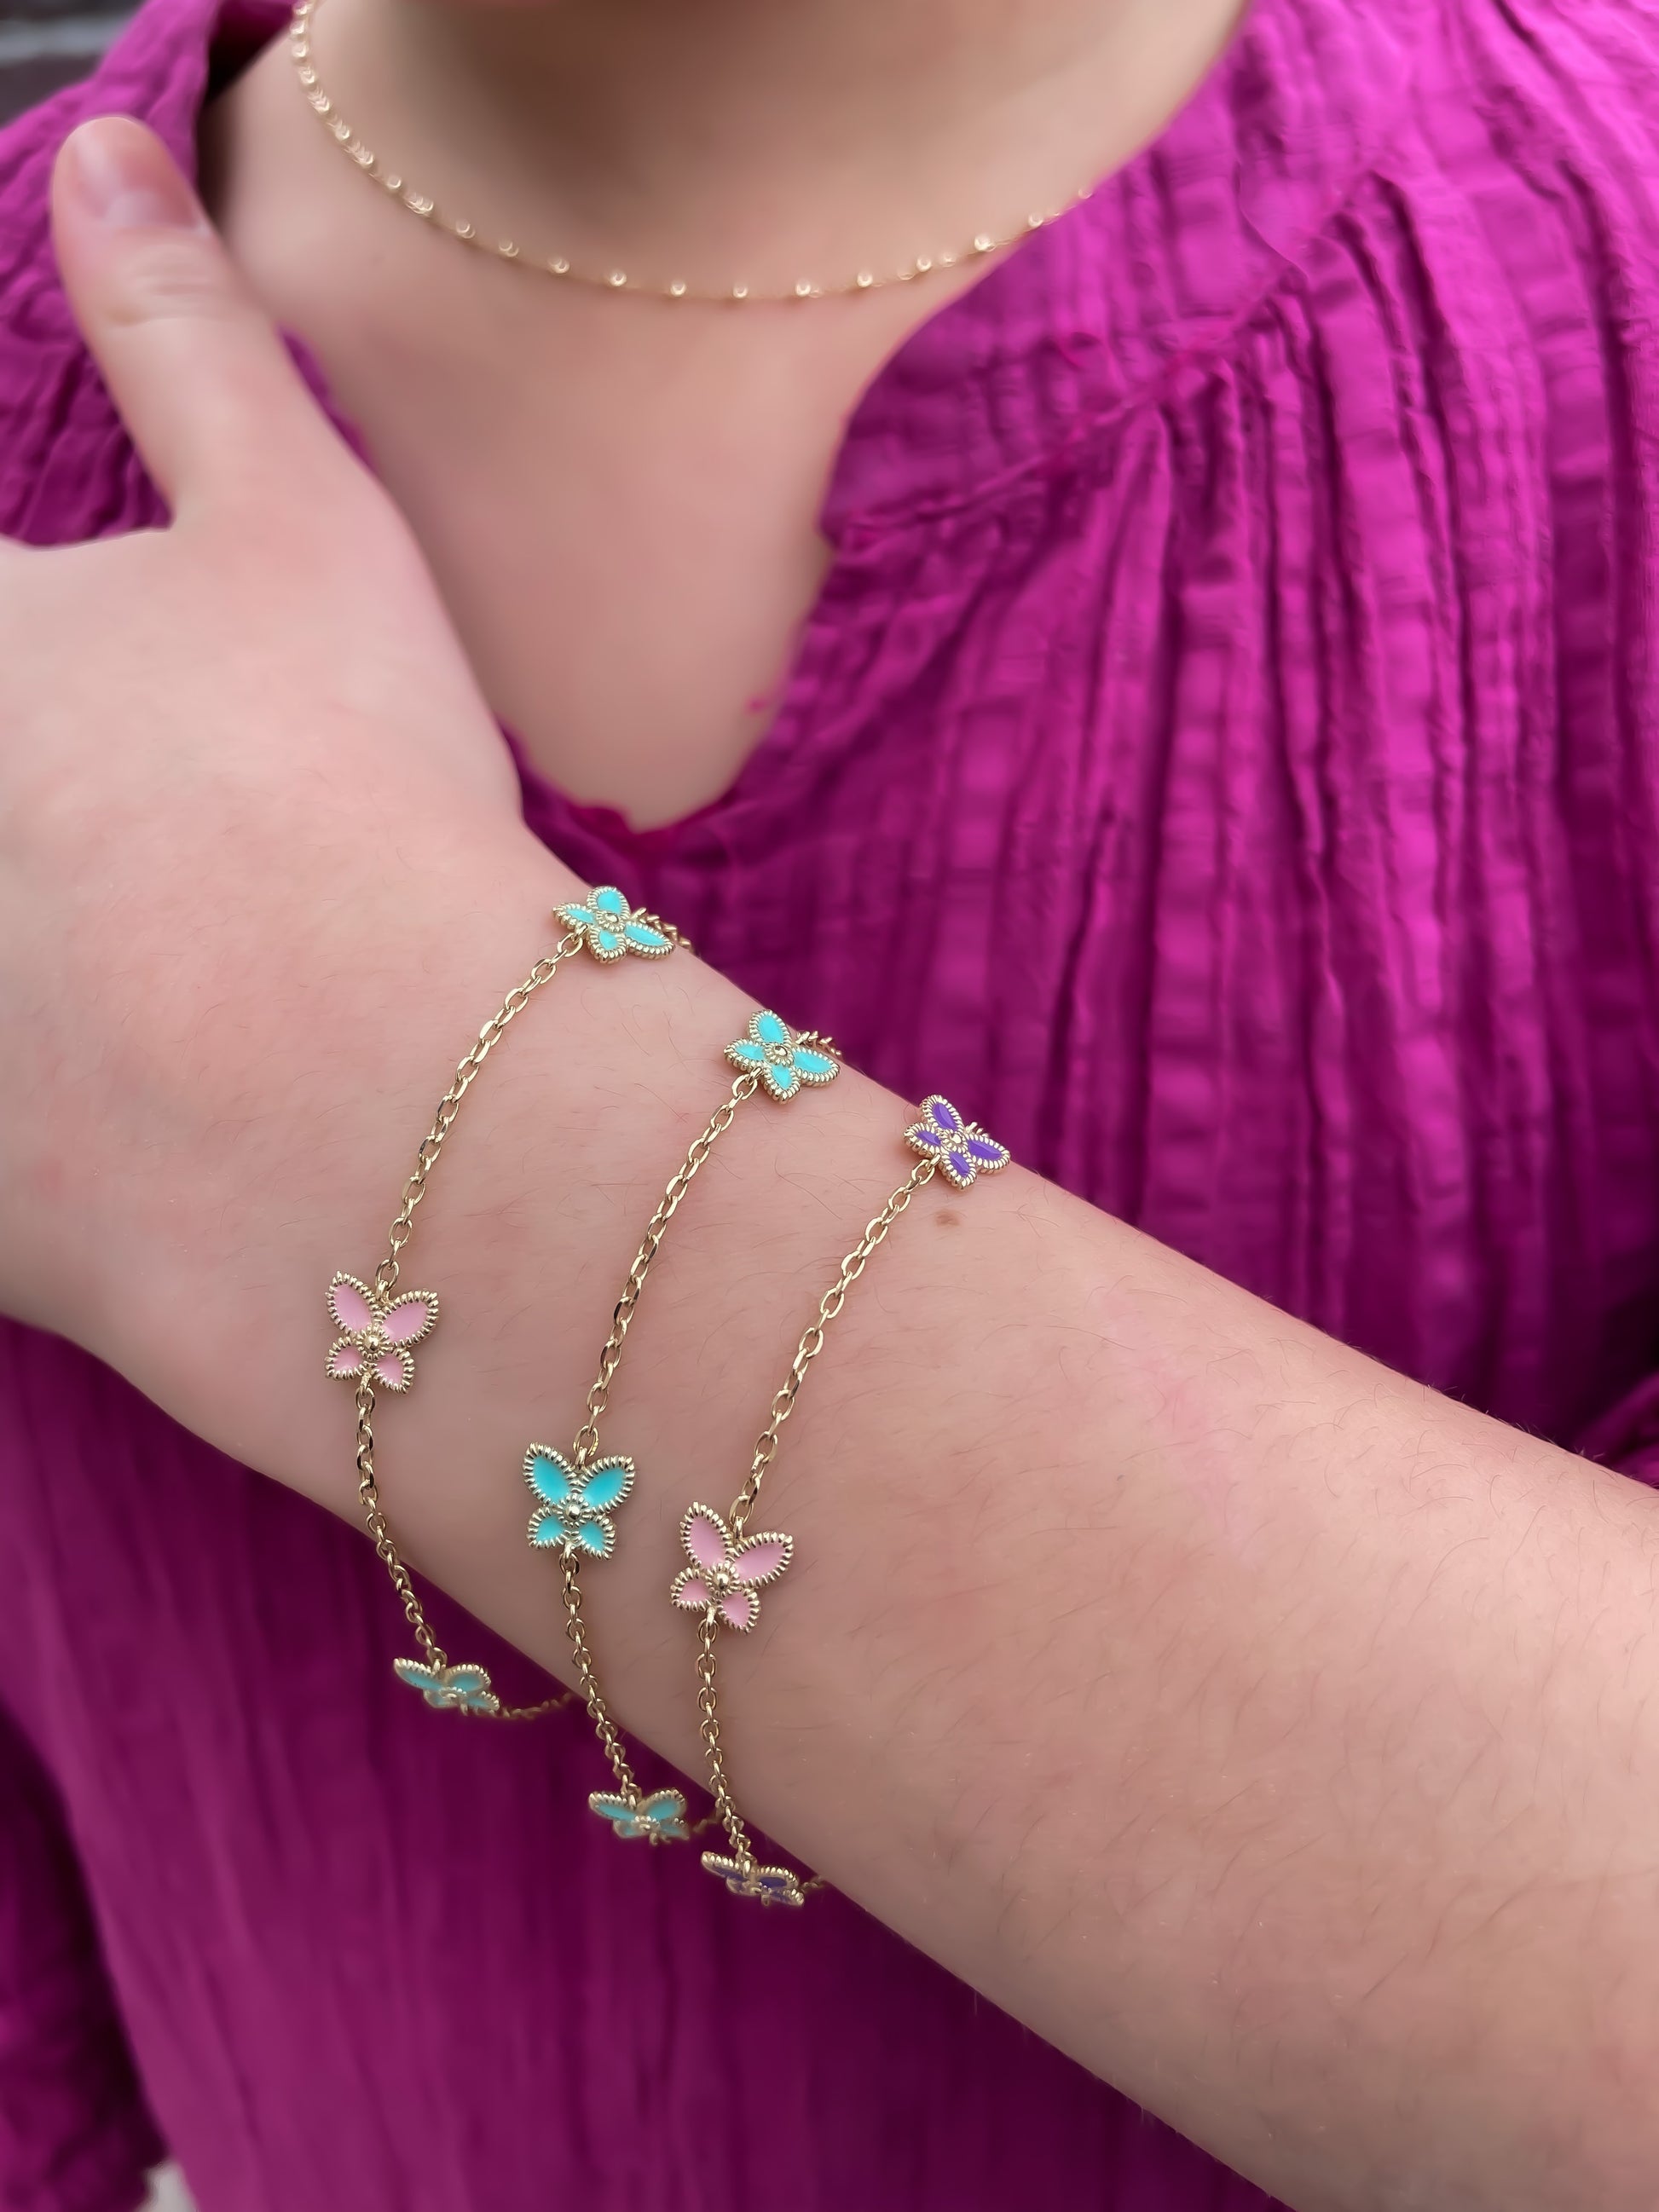 Buy Butterfly Bracelet for Women - Butterfly Charm Bracelets for Teen Girls  